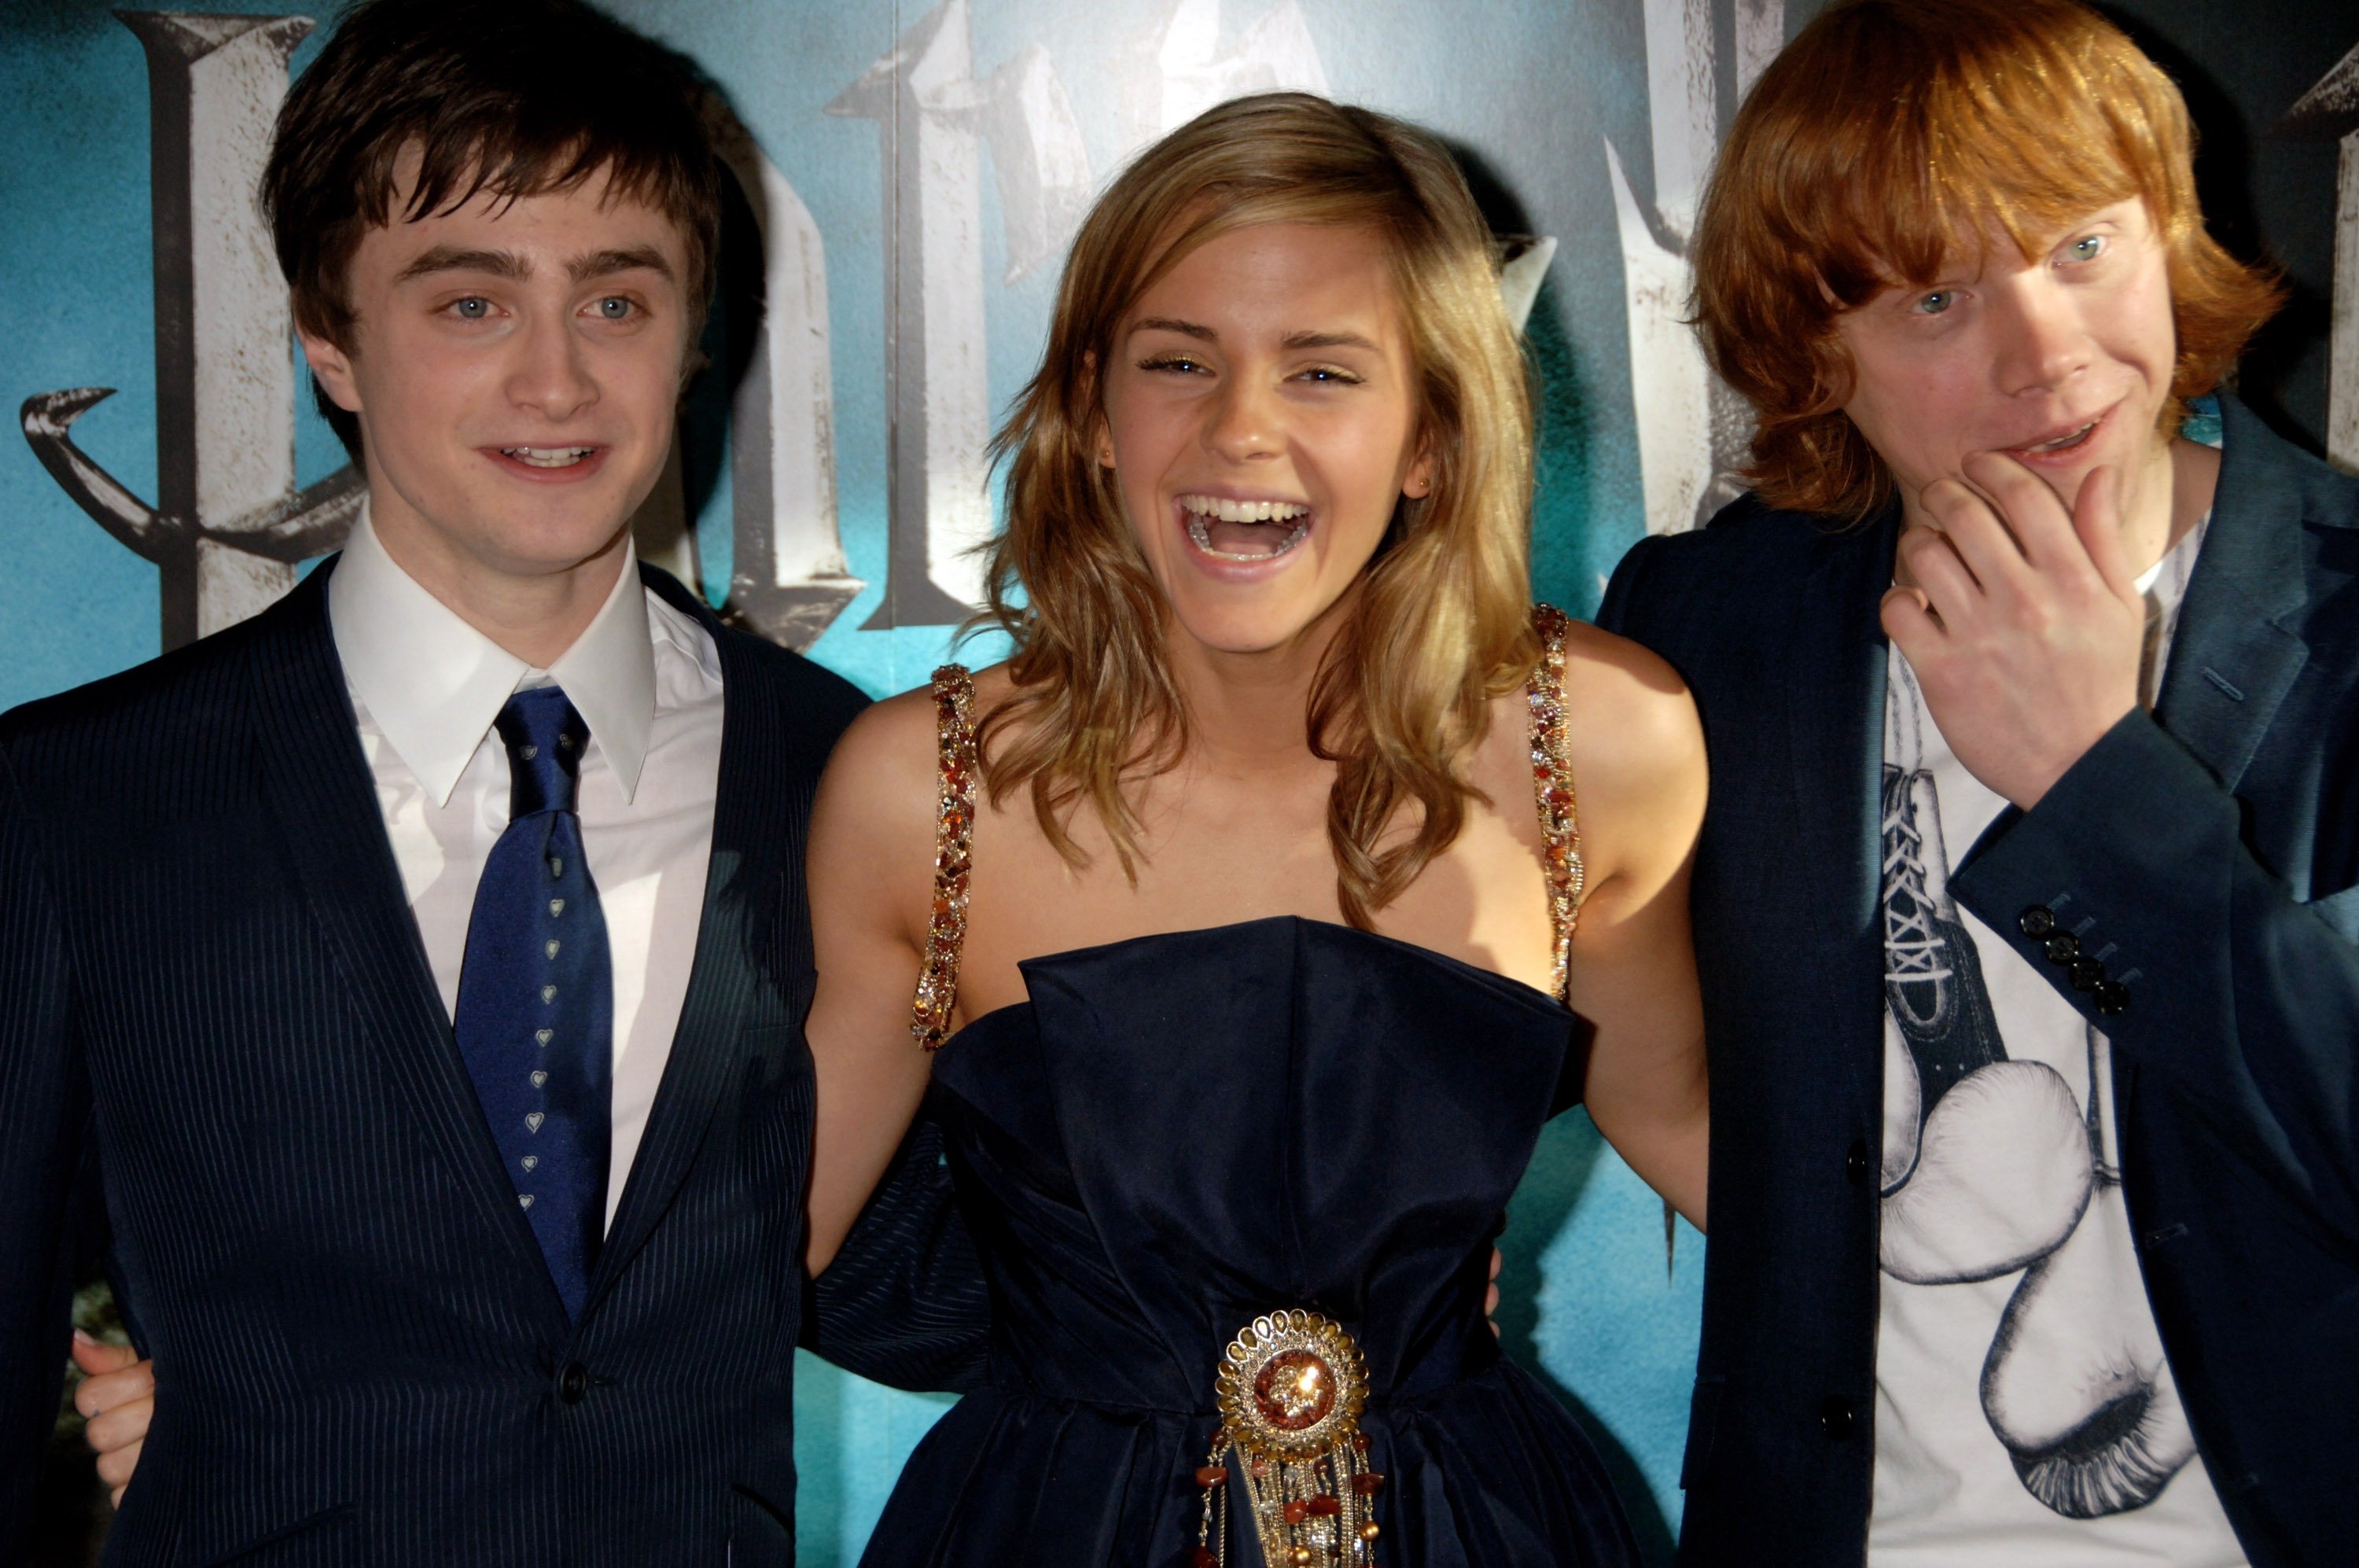 Emma Watson As Hermione Granger In Harry Potter